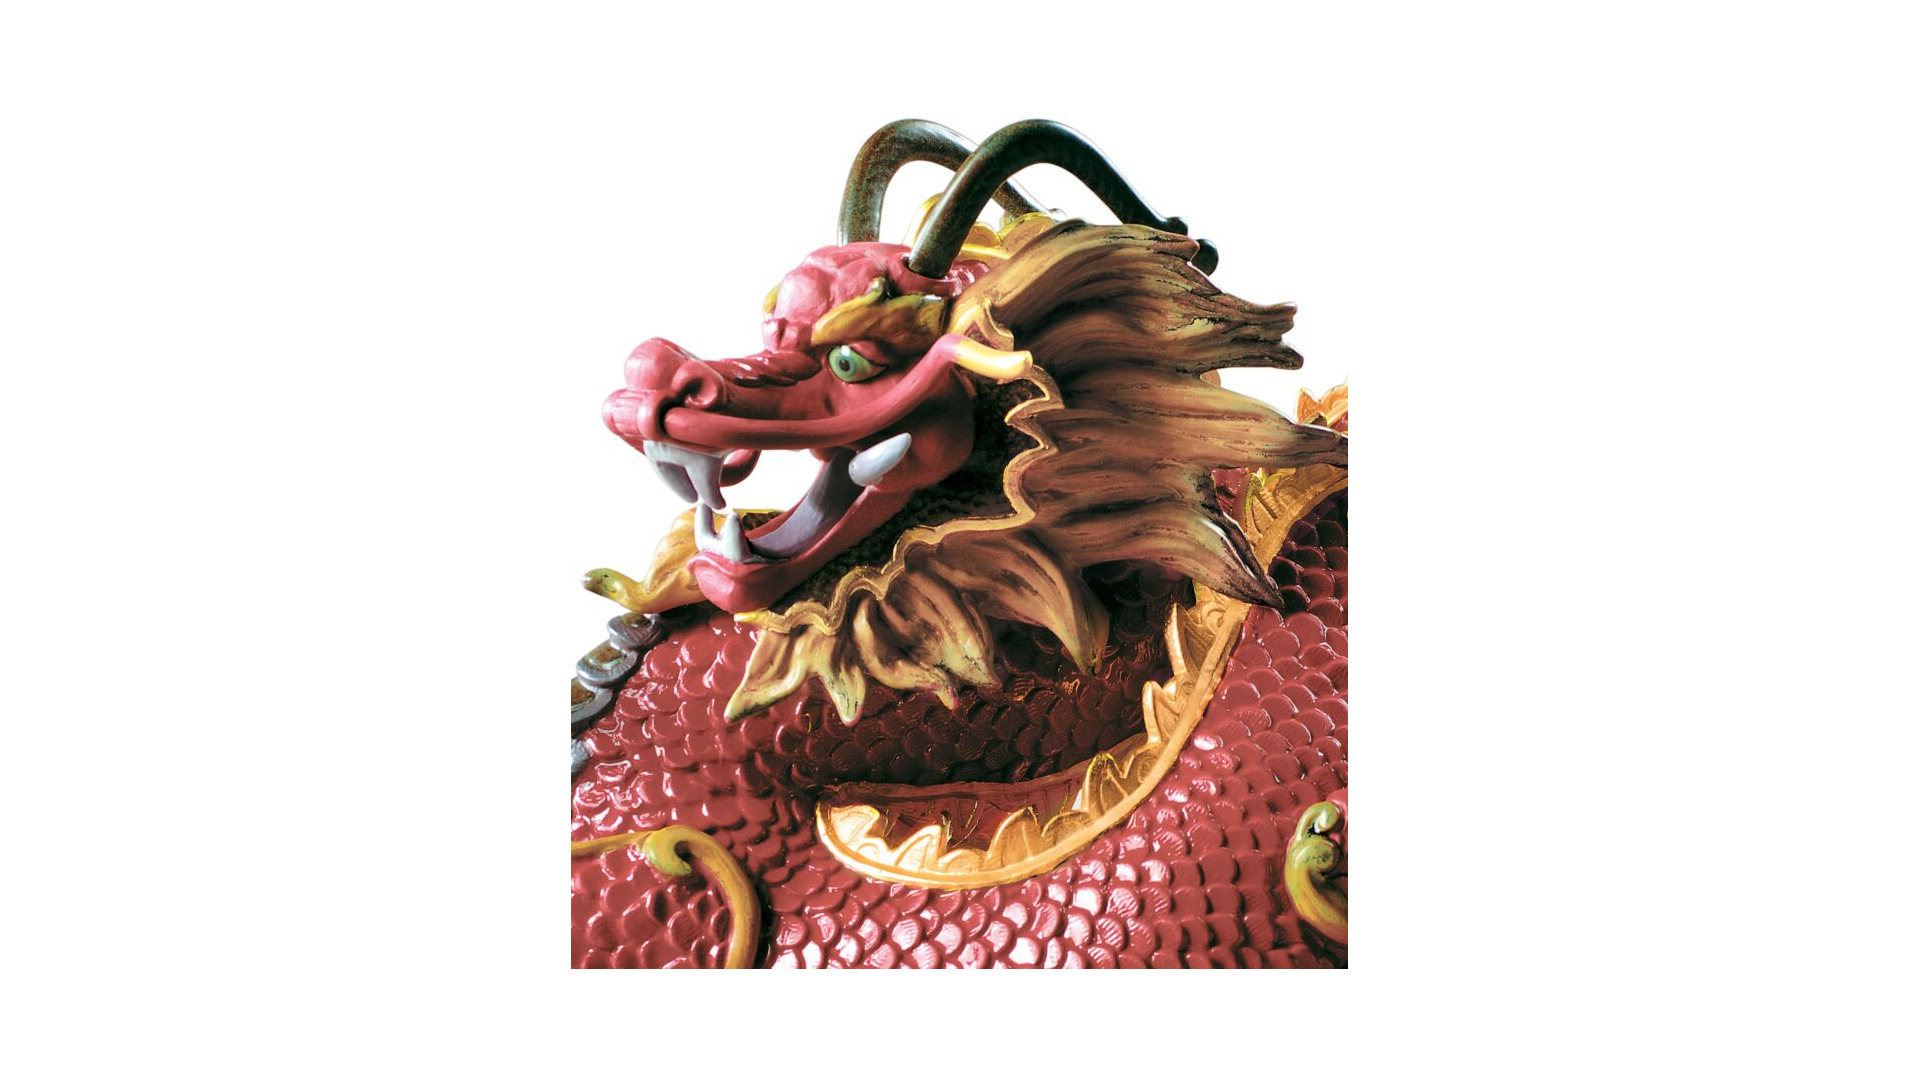 Фигурка Lladro Величественный дракон 31x26 см, фарфор